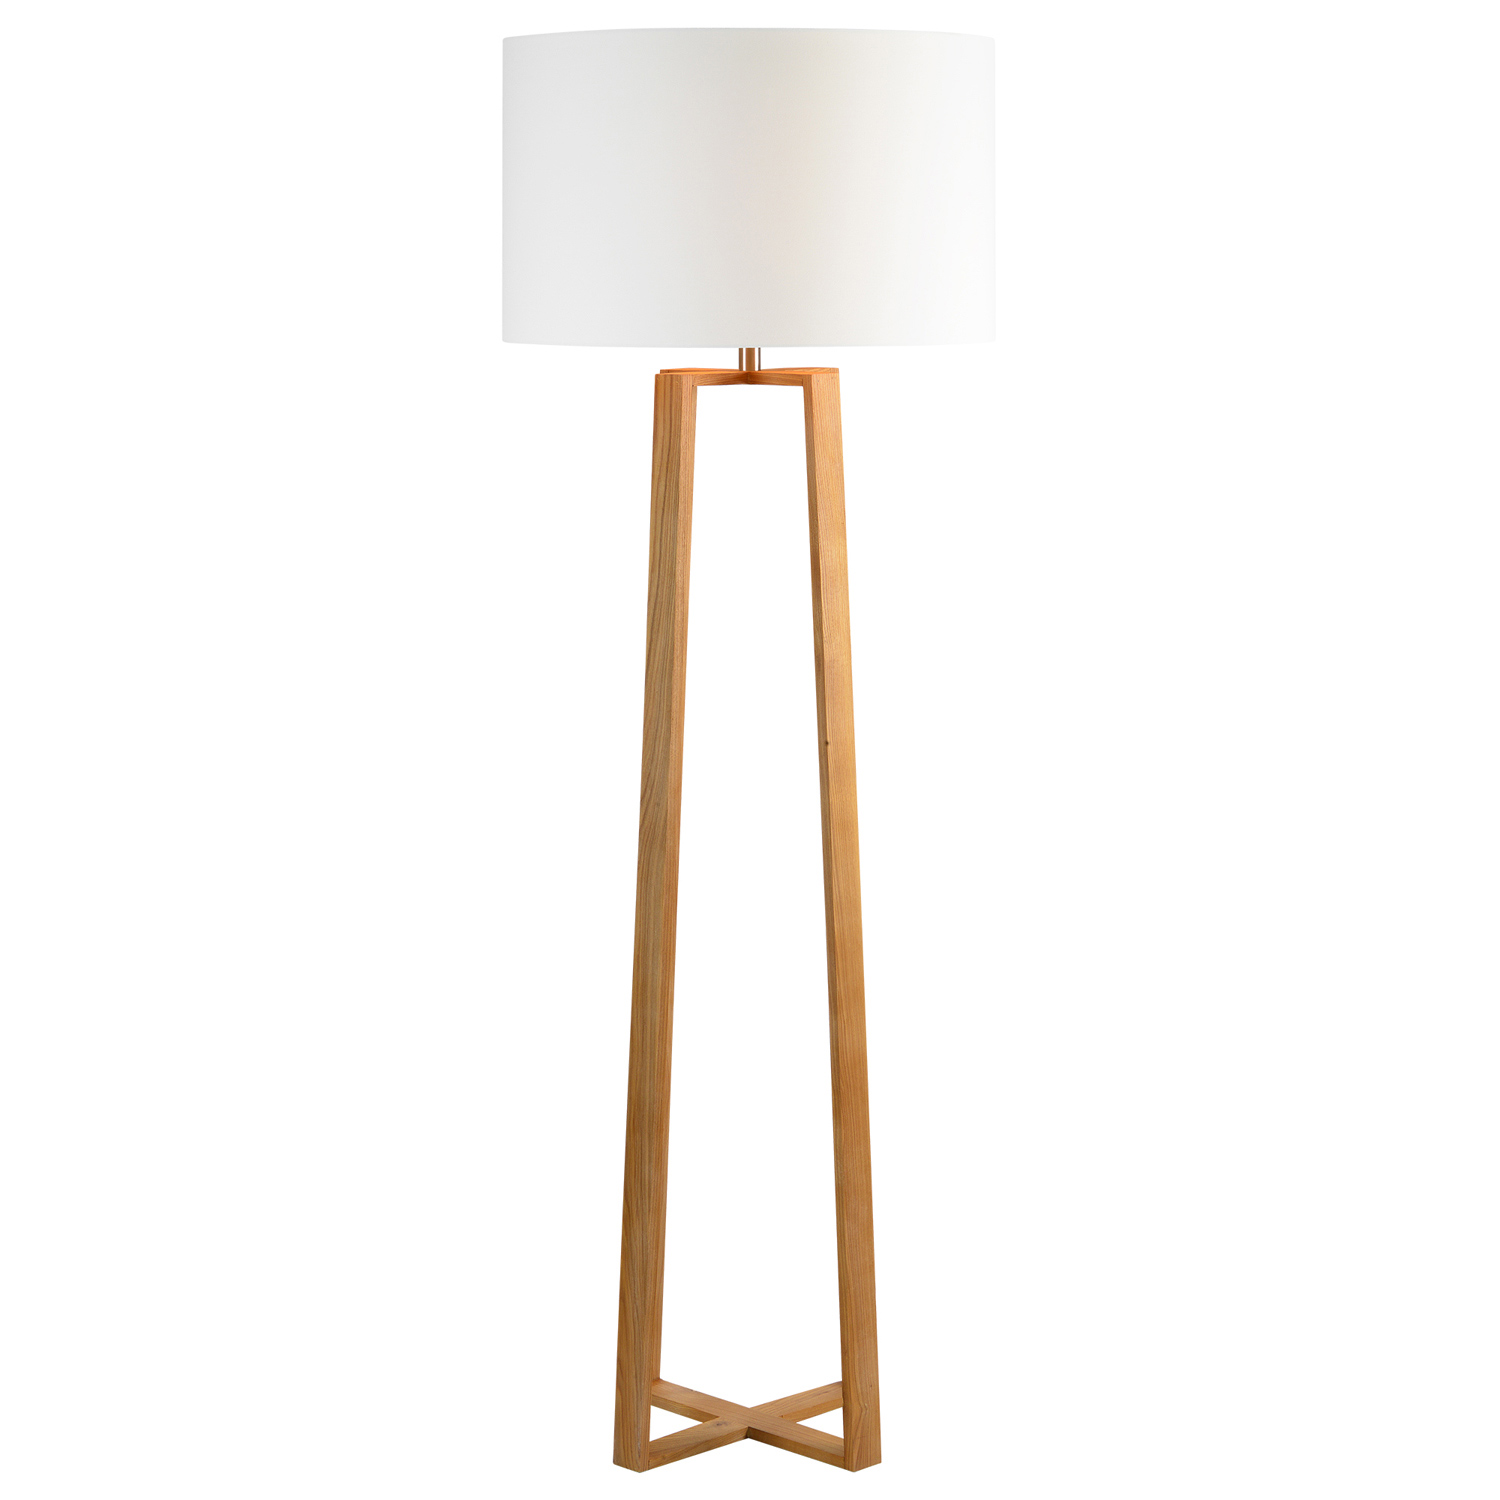 Ren-Wil Cranston Floor Lamp - Natural Wood Color